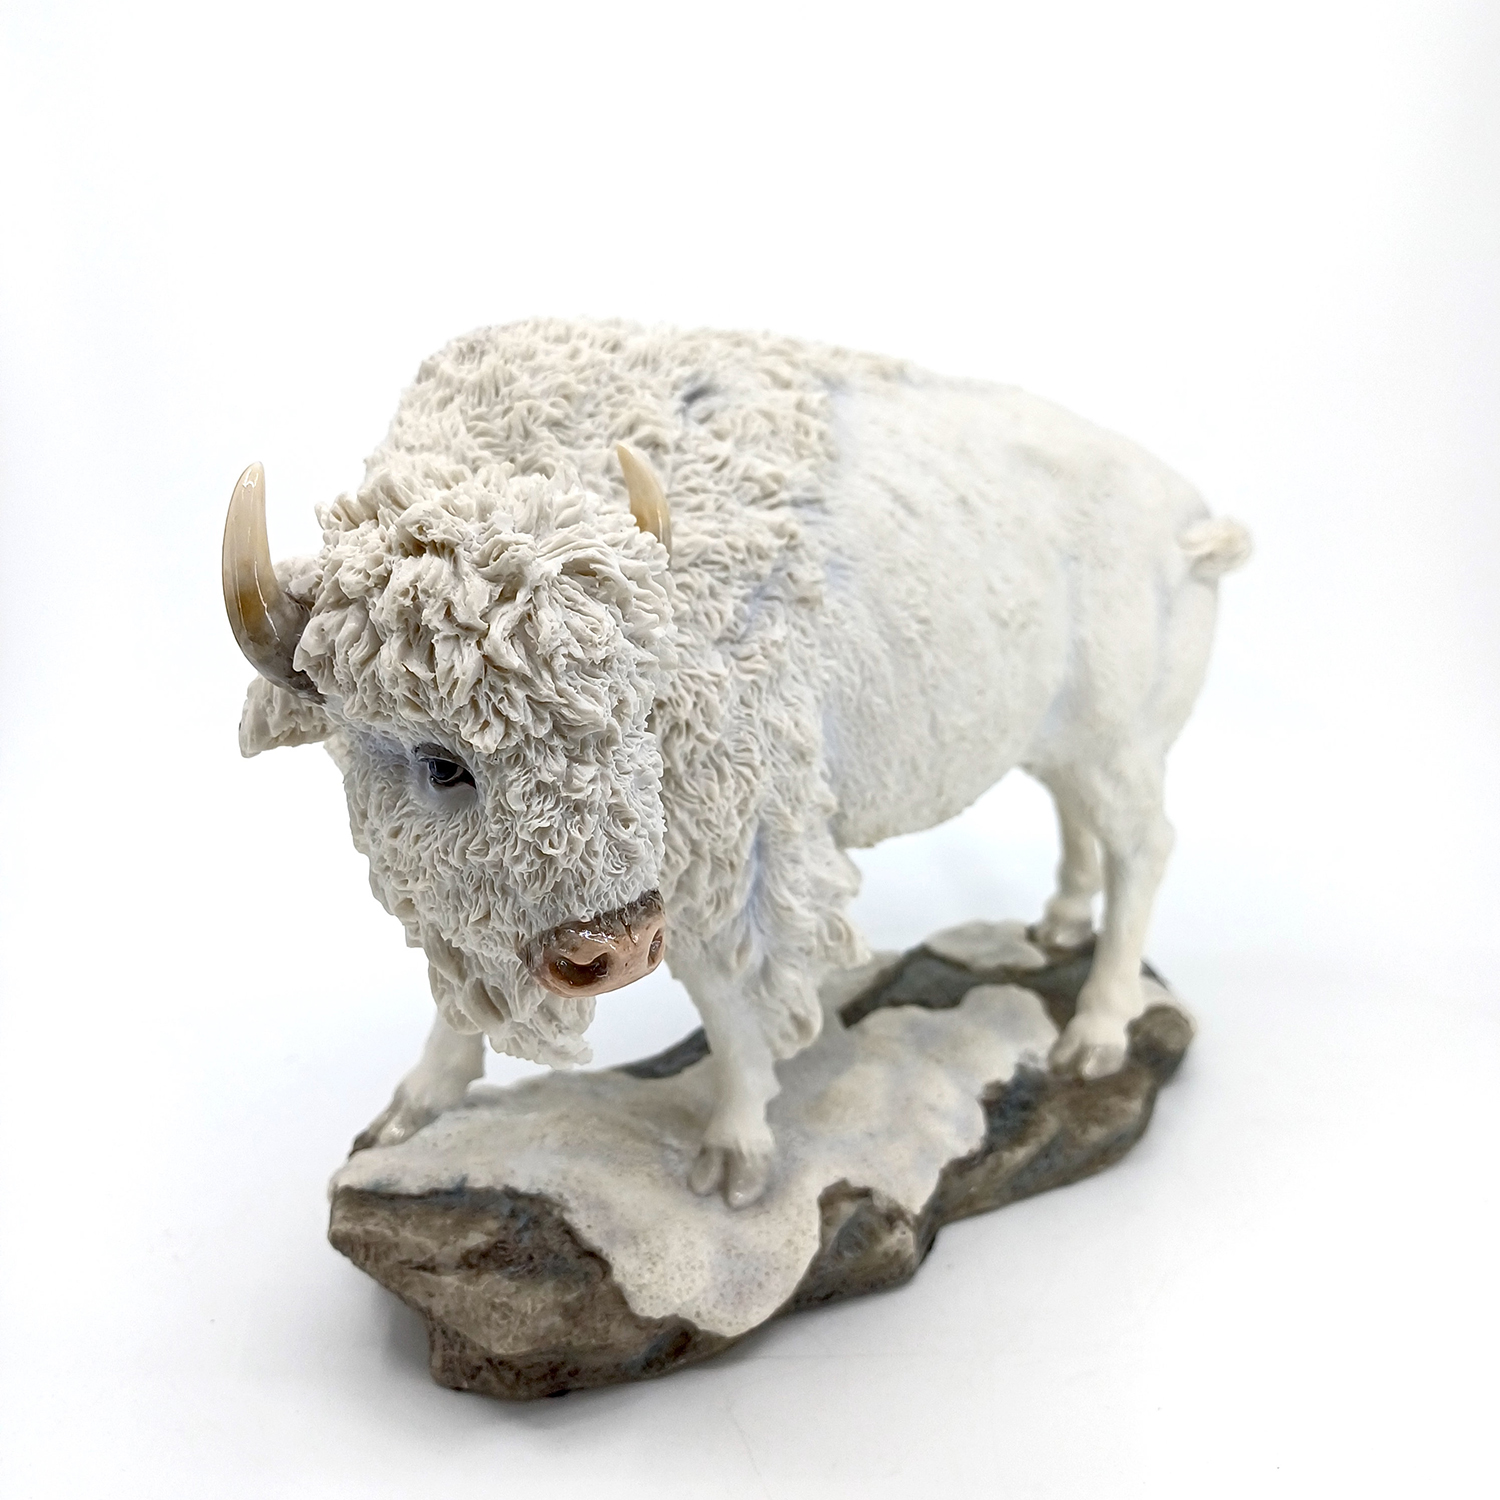 Bison Sculptures for Sale